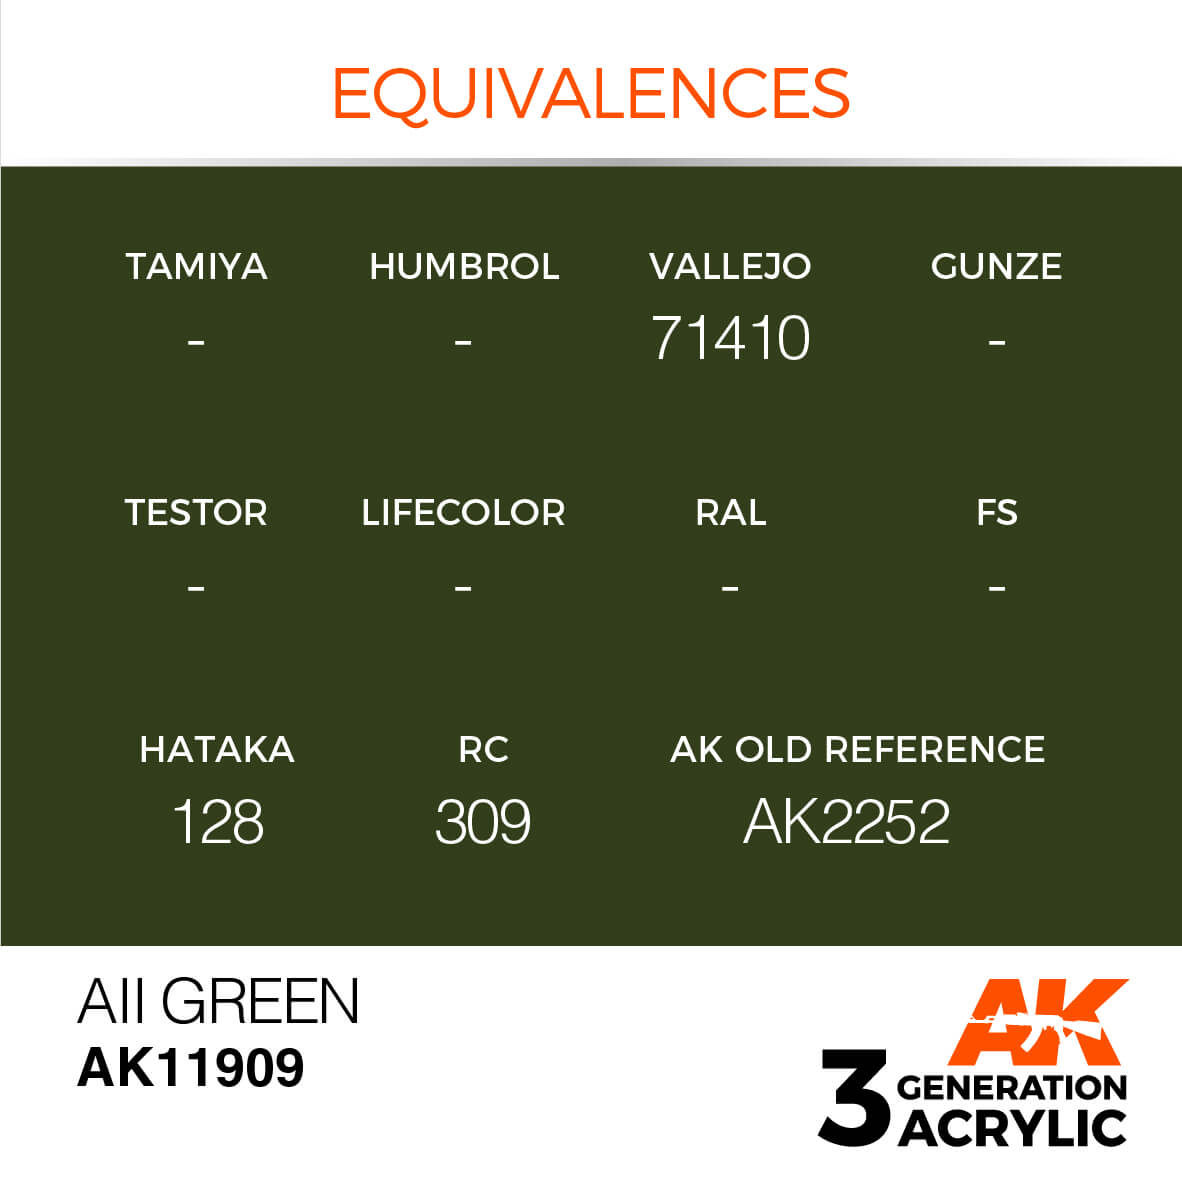 AK AII GREEN – AIR 17ml